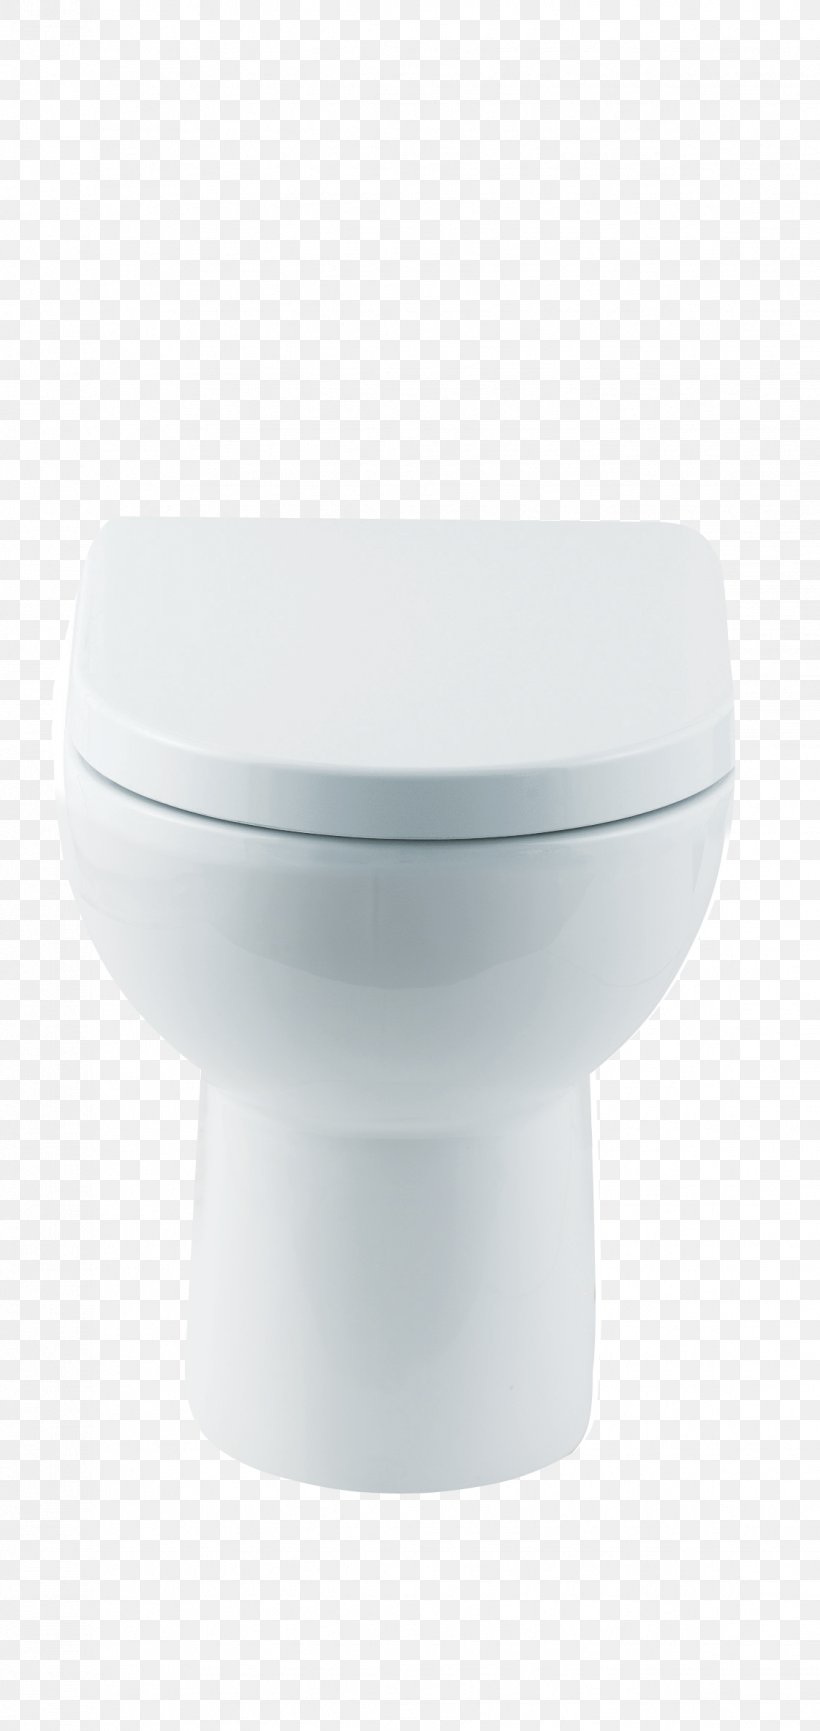 toilet seat fixtures